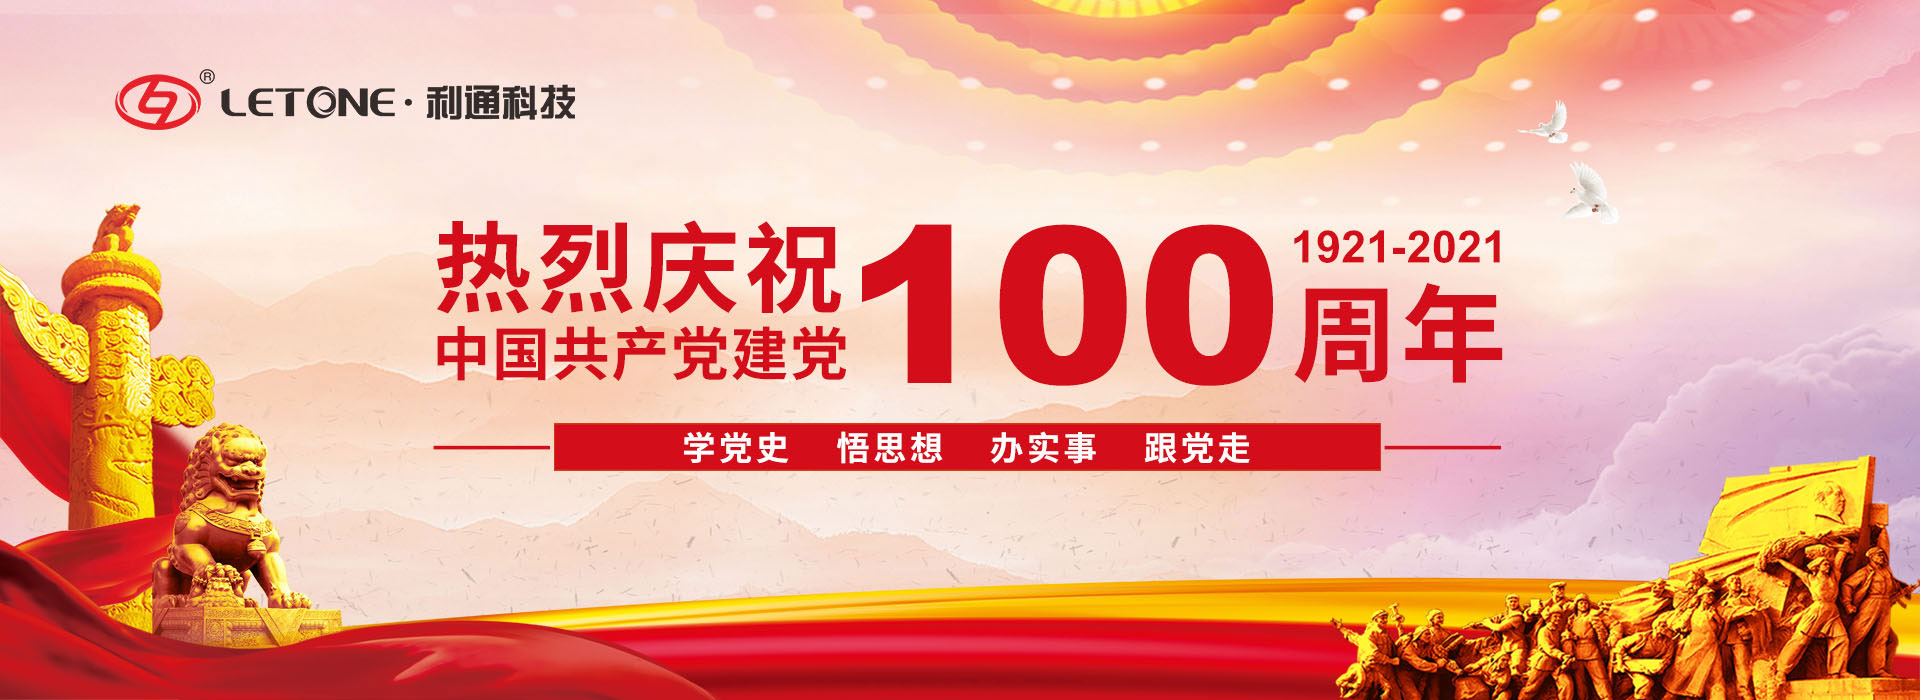 奮斗百年路 啟航新征程 | 熱烈慶祝中國共產黨成立100周年